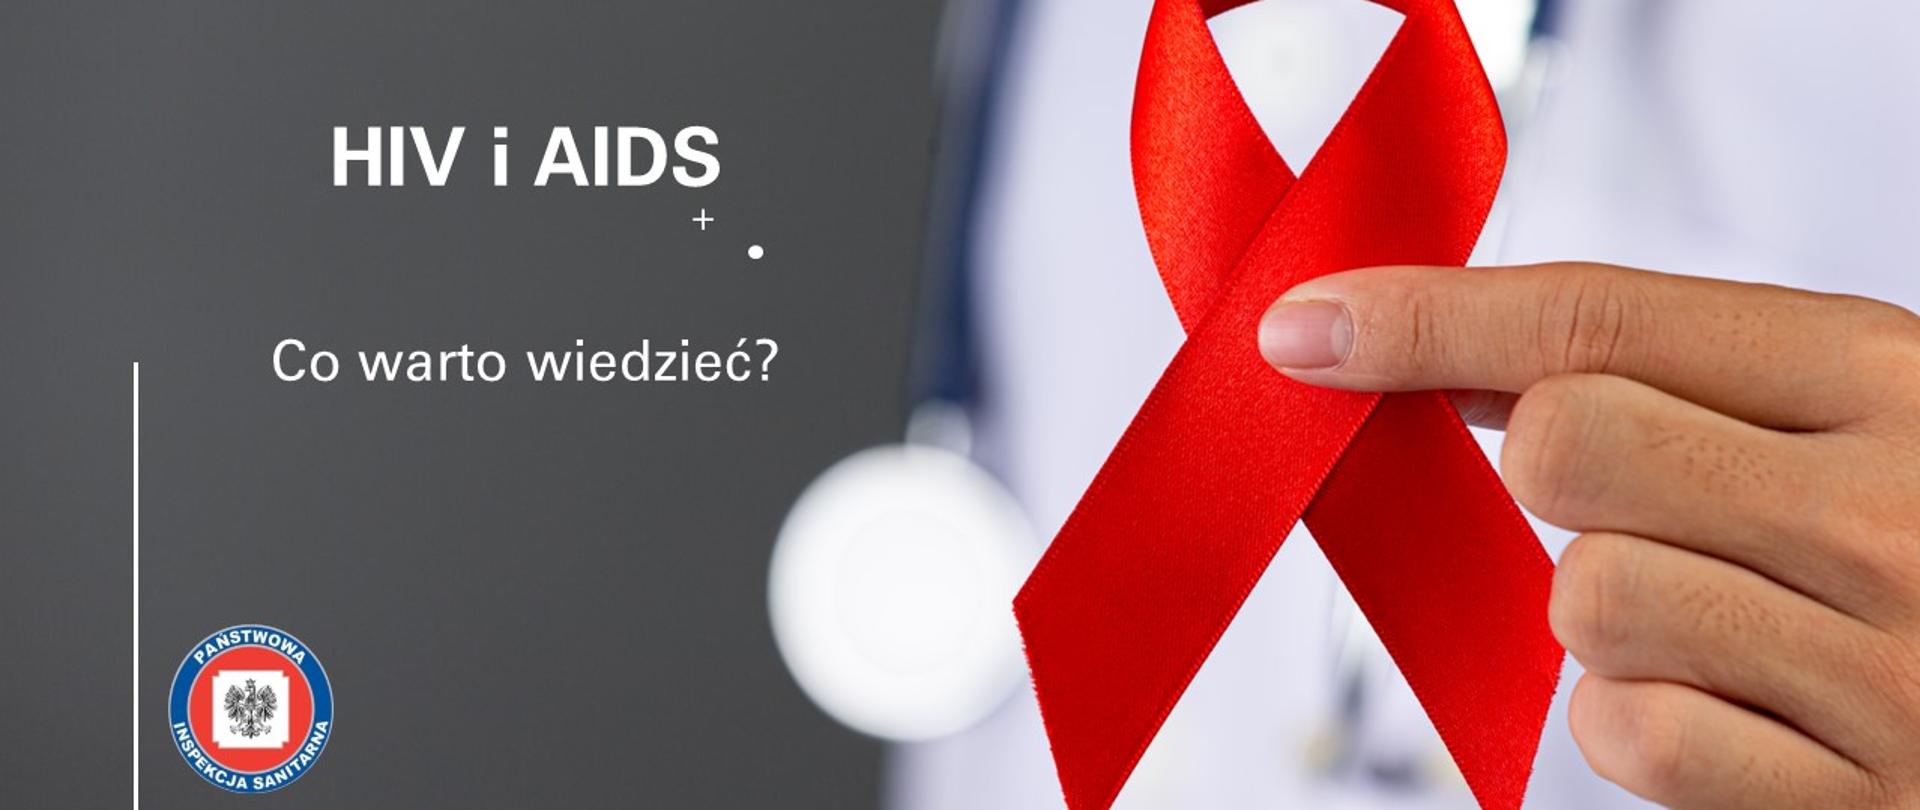 Lekarz trzyma czerwona wstążkę. Napis HIV i AIDS. Co warto wiedzieć?